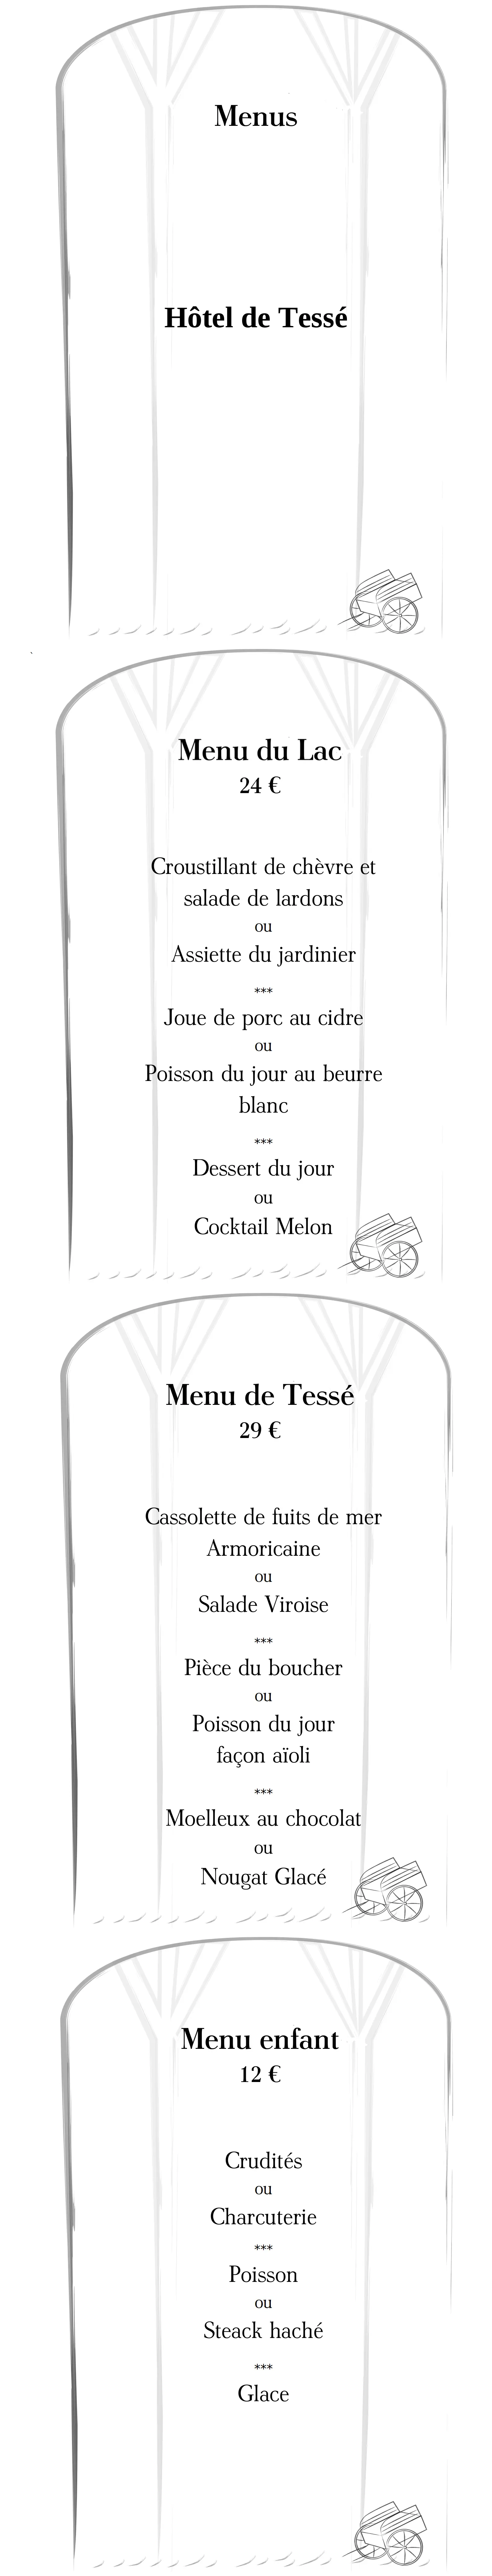 Menu 2021 Restaurant Bagnoles de l'Orne sous format image.